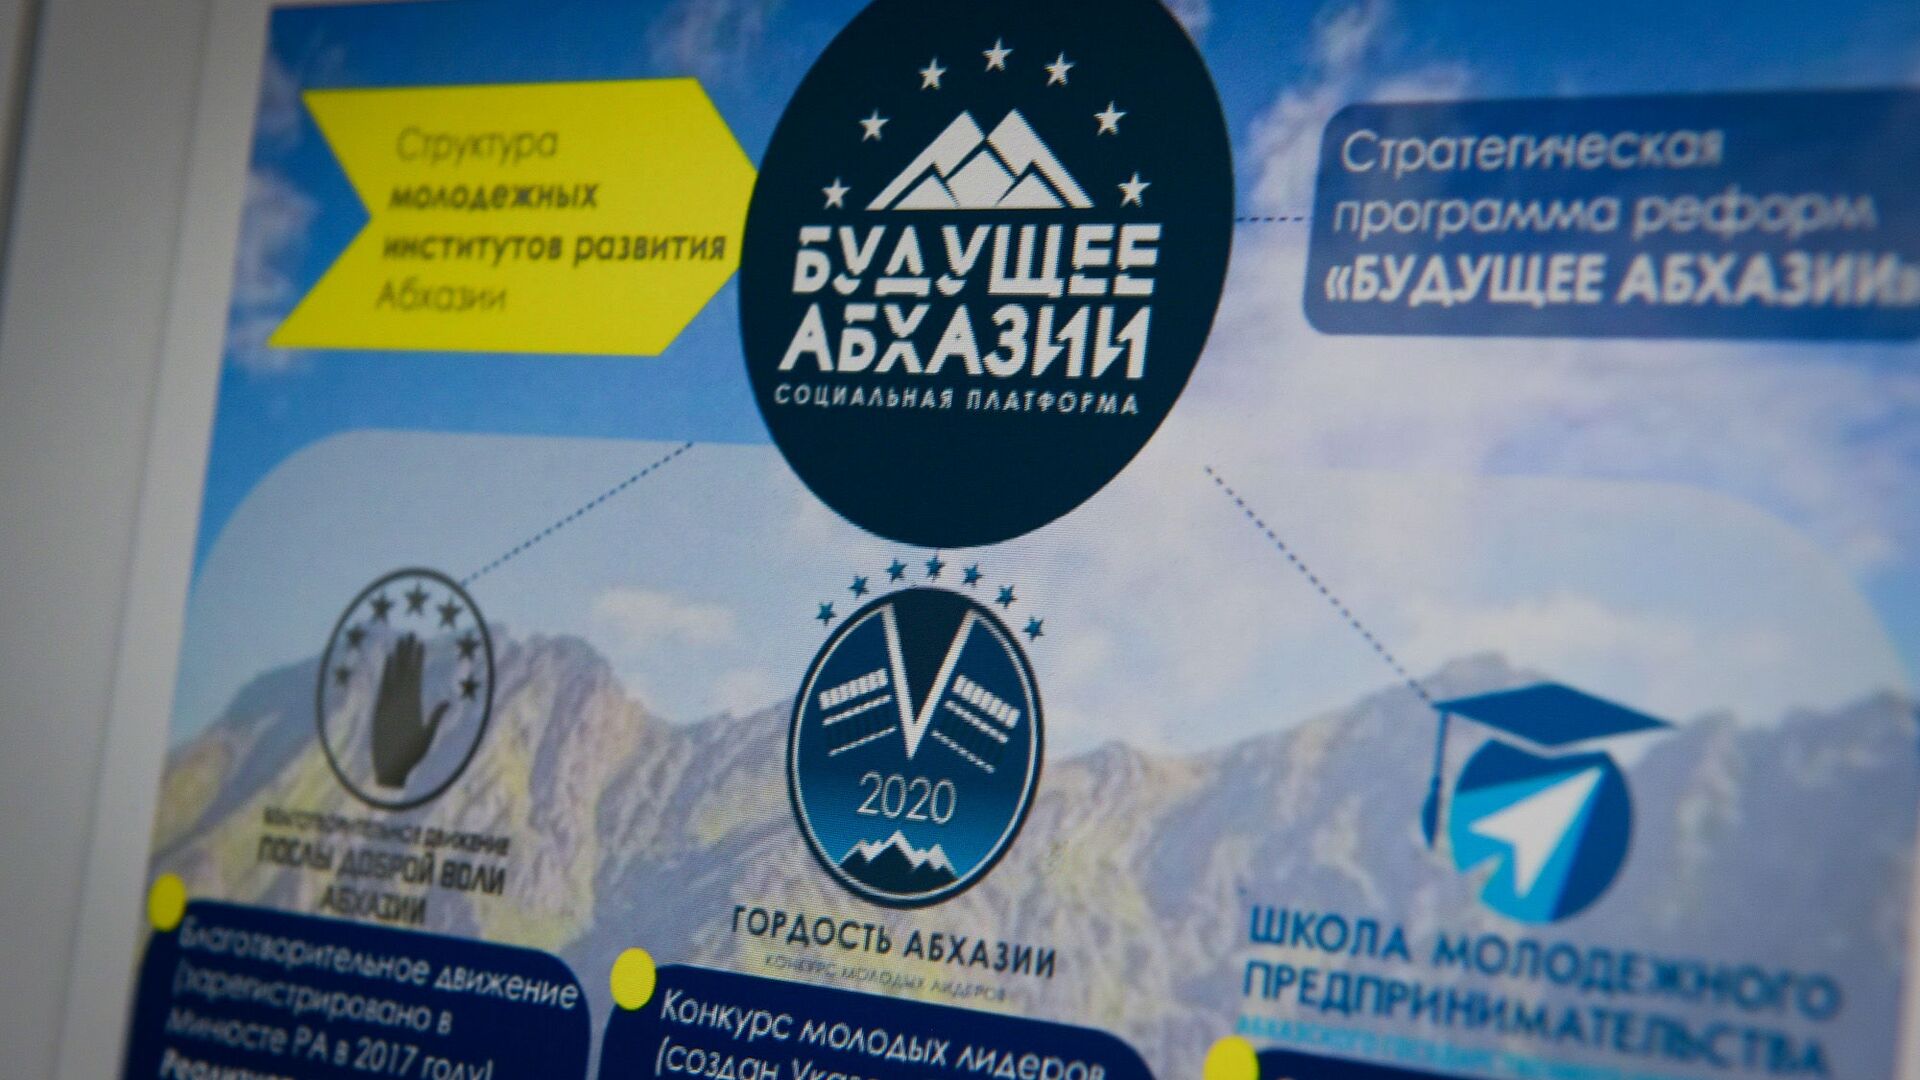 Программа реформ Будущее Абхазии была разработана финалистами конкурса Гордость Абхазии - Sputnik Абхазия, 1920, 13.06.2022